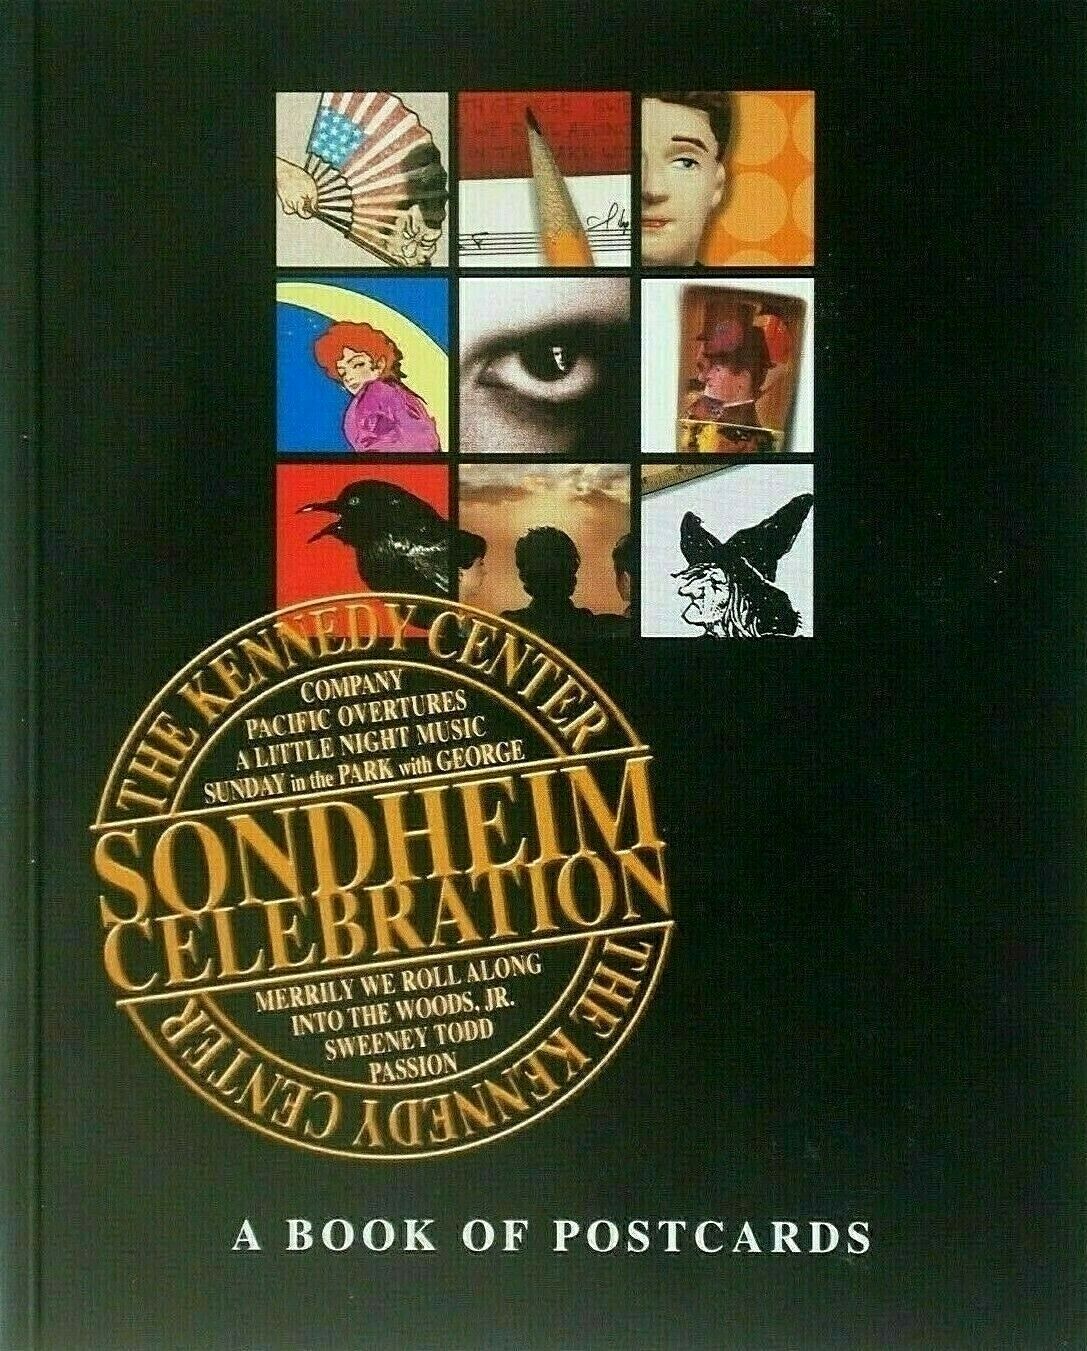 The Kennedy Center Sondheim Celebration Book Of 20 Postcards ~stephen 8 Musicals